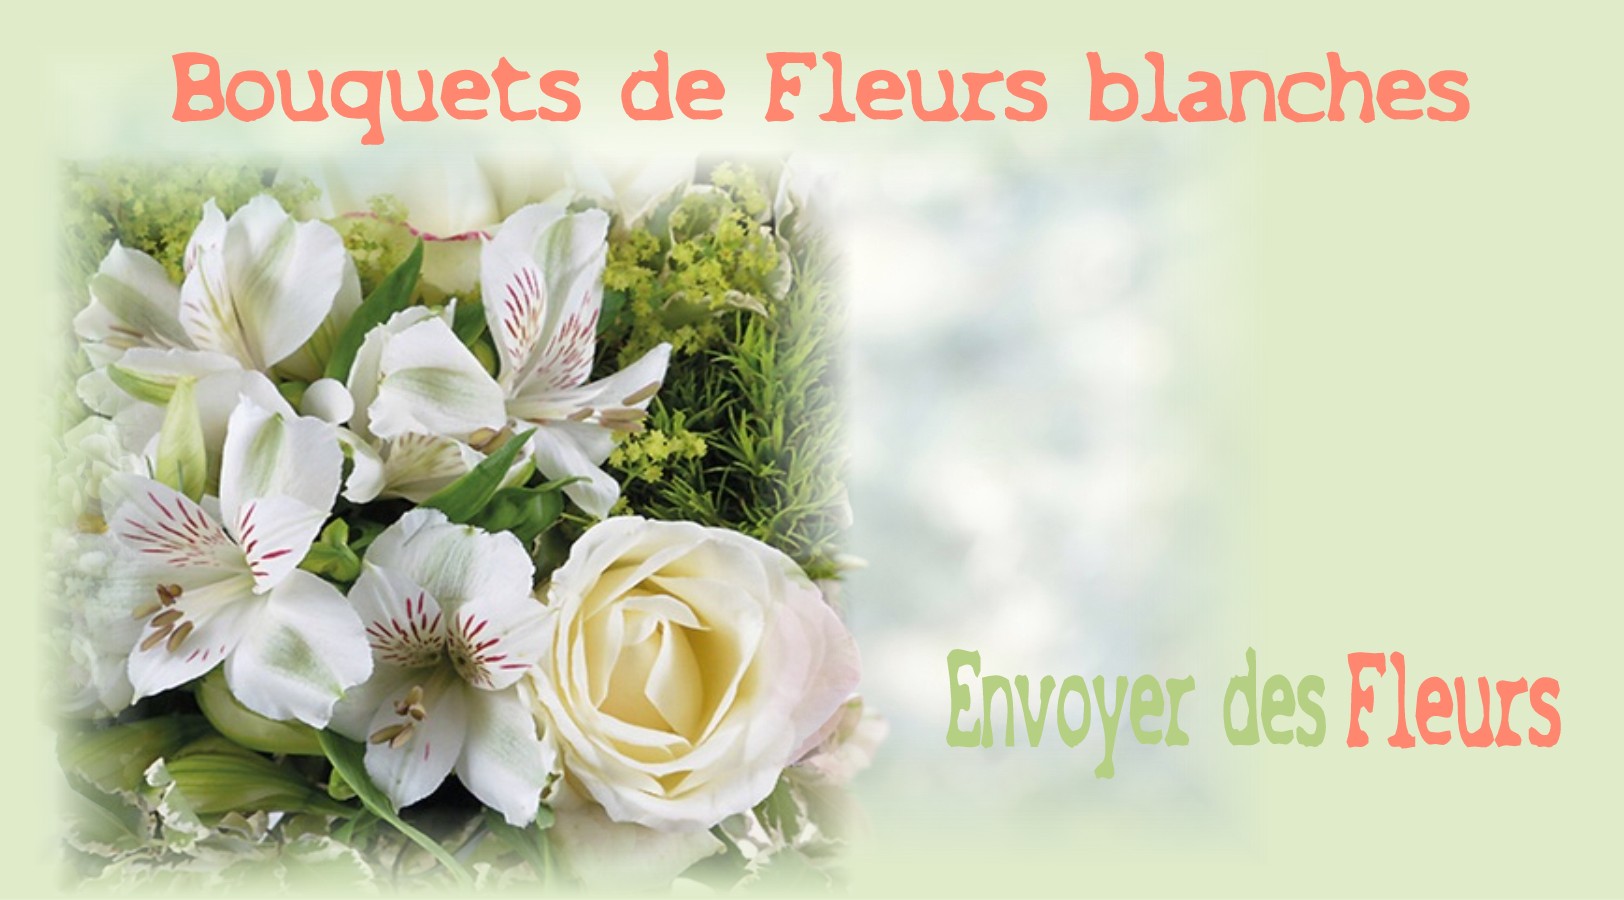 BOUQUETS DE FLEURS BLANCHES -FLEURISTE STRASBOURG (67) - ENVOYER DES FLEURS